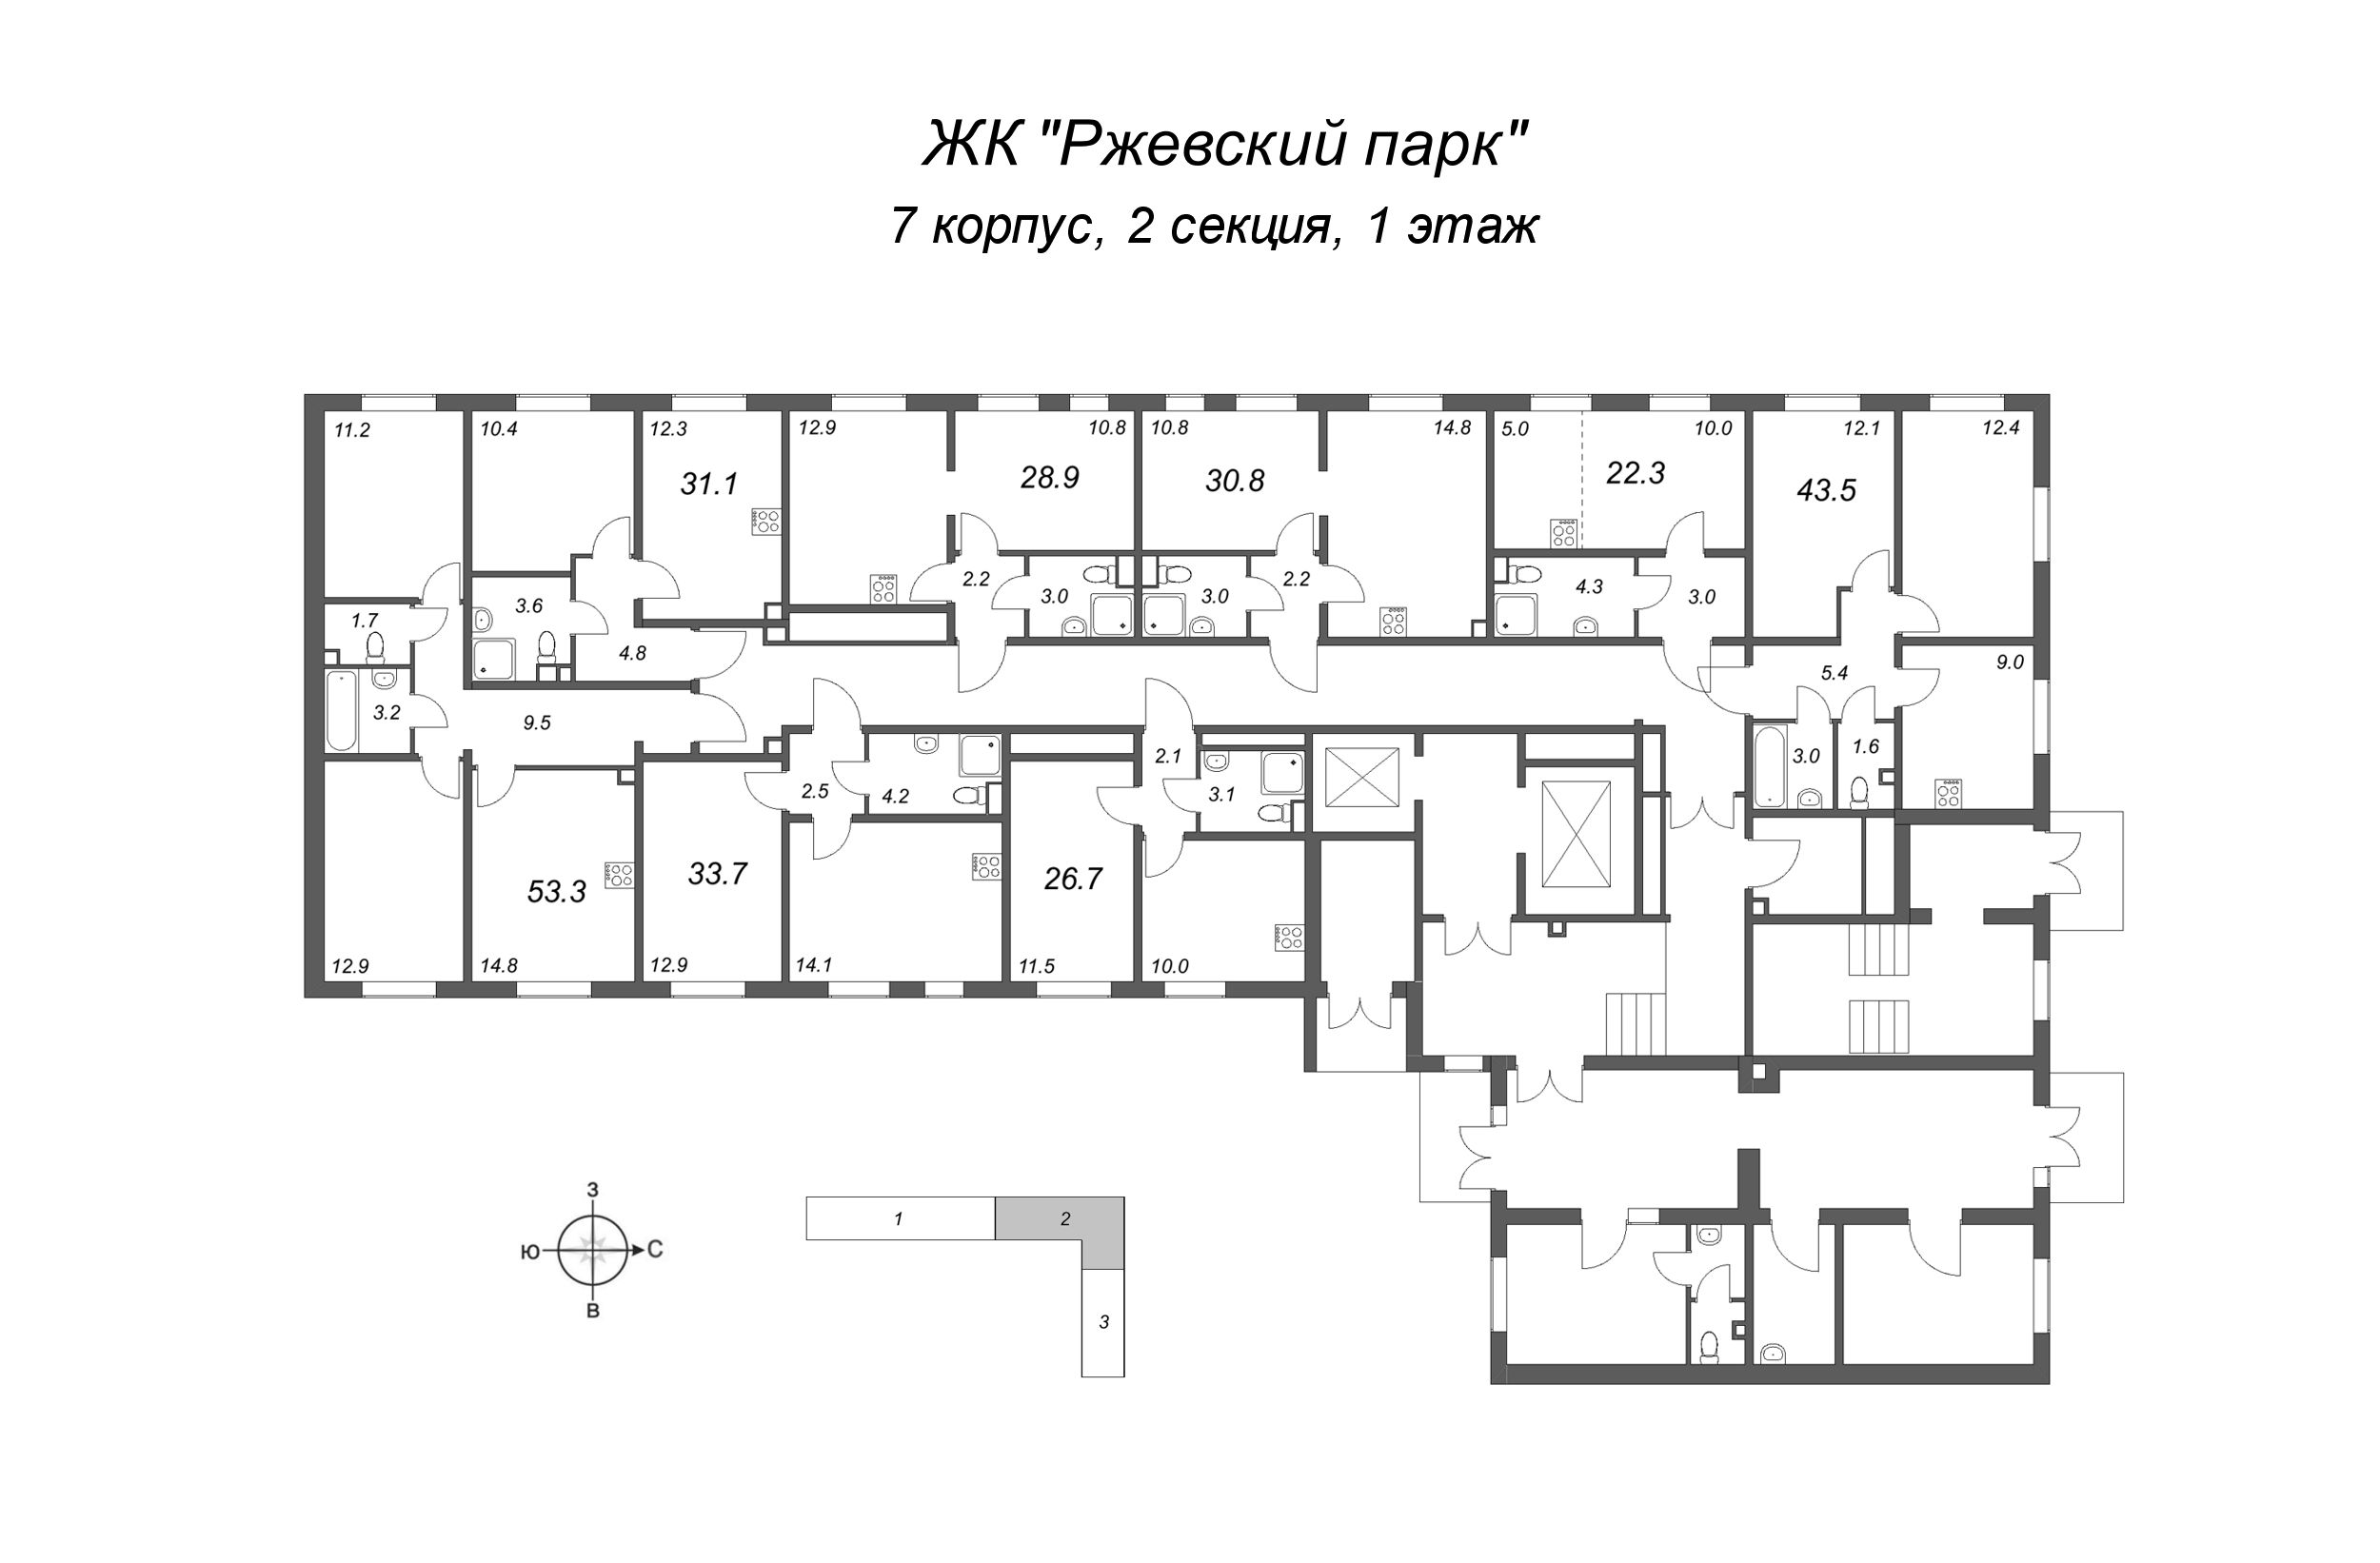 1-комнатная квартира, 31.1 м² в ЖК "ЛСР. Ржевский парк" - планировка этажа